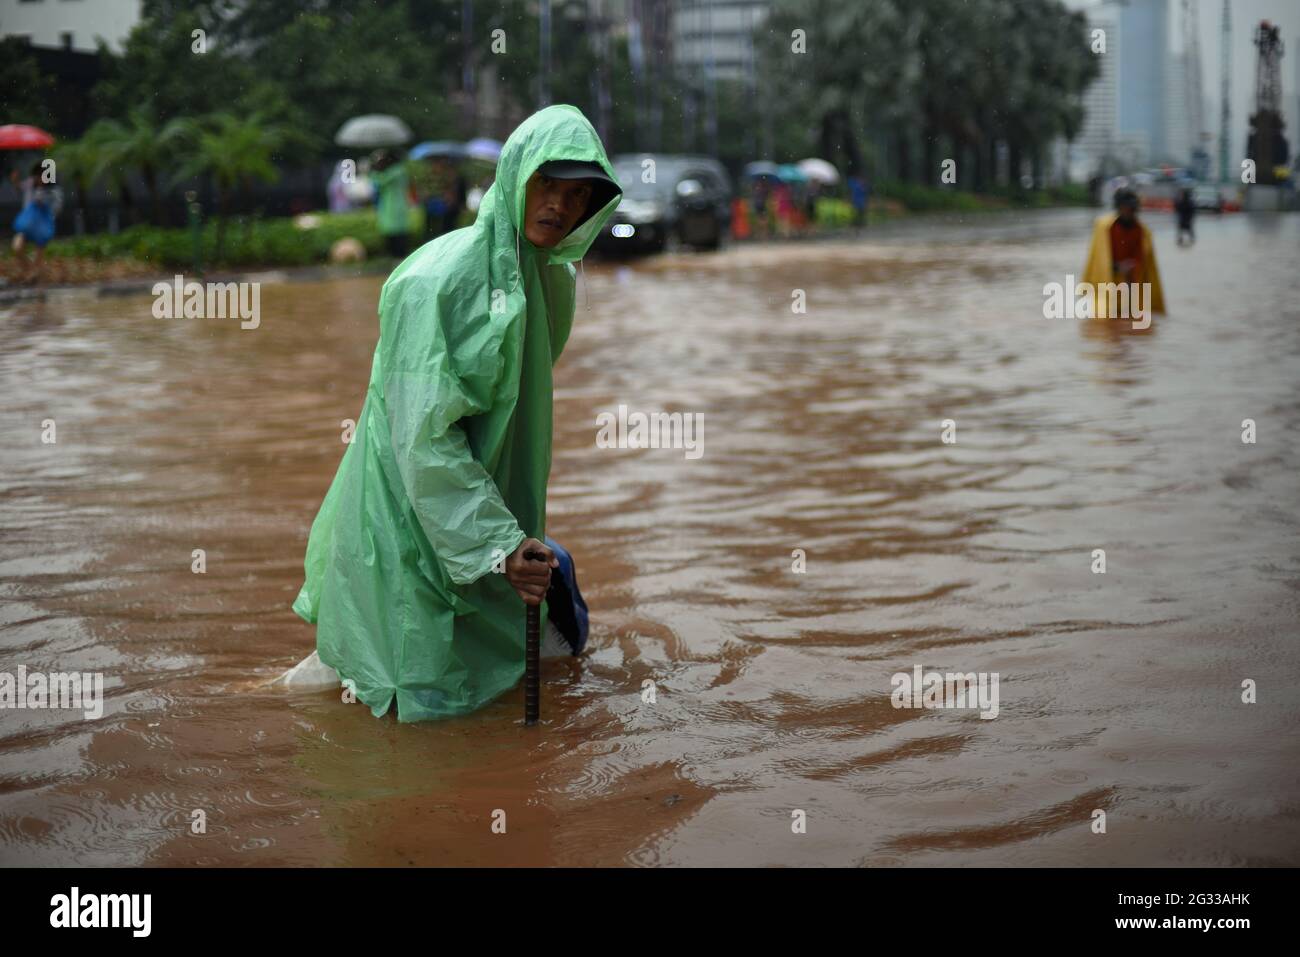 Jakarta, Indonesien. Februar 2015. Arbeiter des Stadtplanungsbüros versuchten zu finden, ob das Entwässerungssystem der Straße verstopft ist, nachdem ein kontinuierlicher Regen Jakarta überflutet hatte, auf der Thamrin Street, die sich über das Herz der indonesischen Hauptstadt erstreckt. Stockfoto